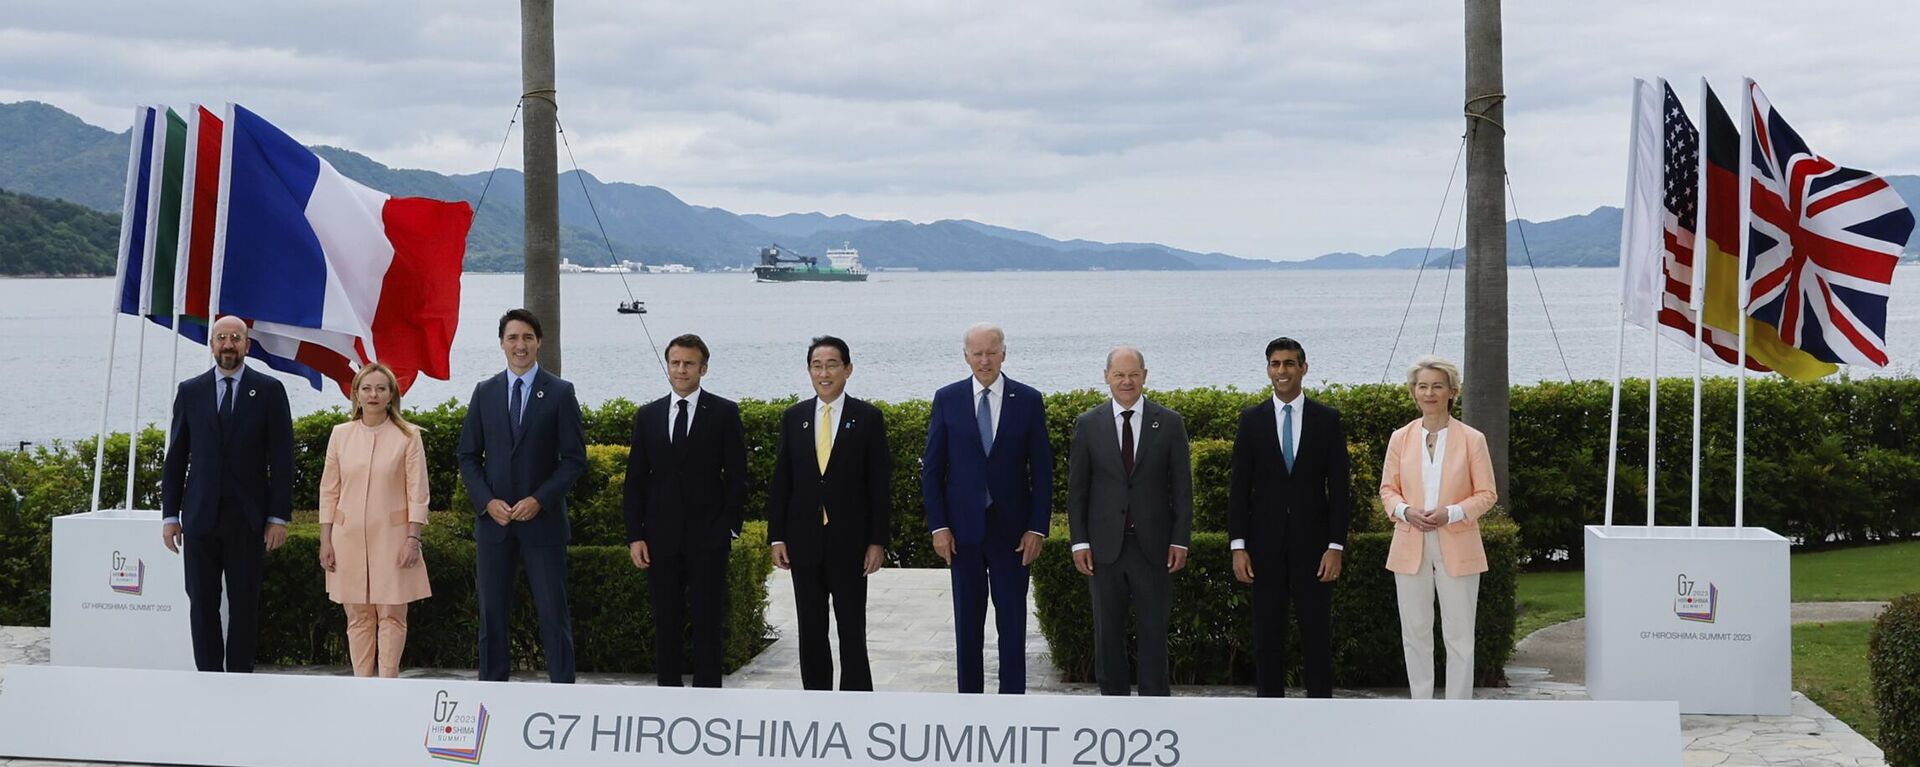 Лидеры G7 во время совместного фотографирования перед рабочей встречей около Grand Prince Hotel в Хиросиме, Япония - Sputnik Србија, 1920, 20.05.2023